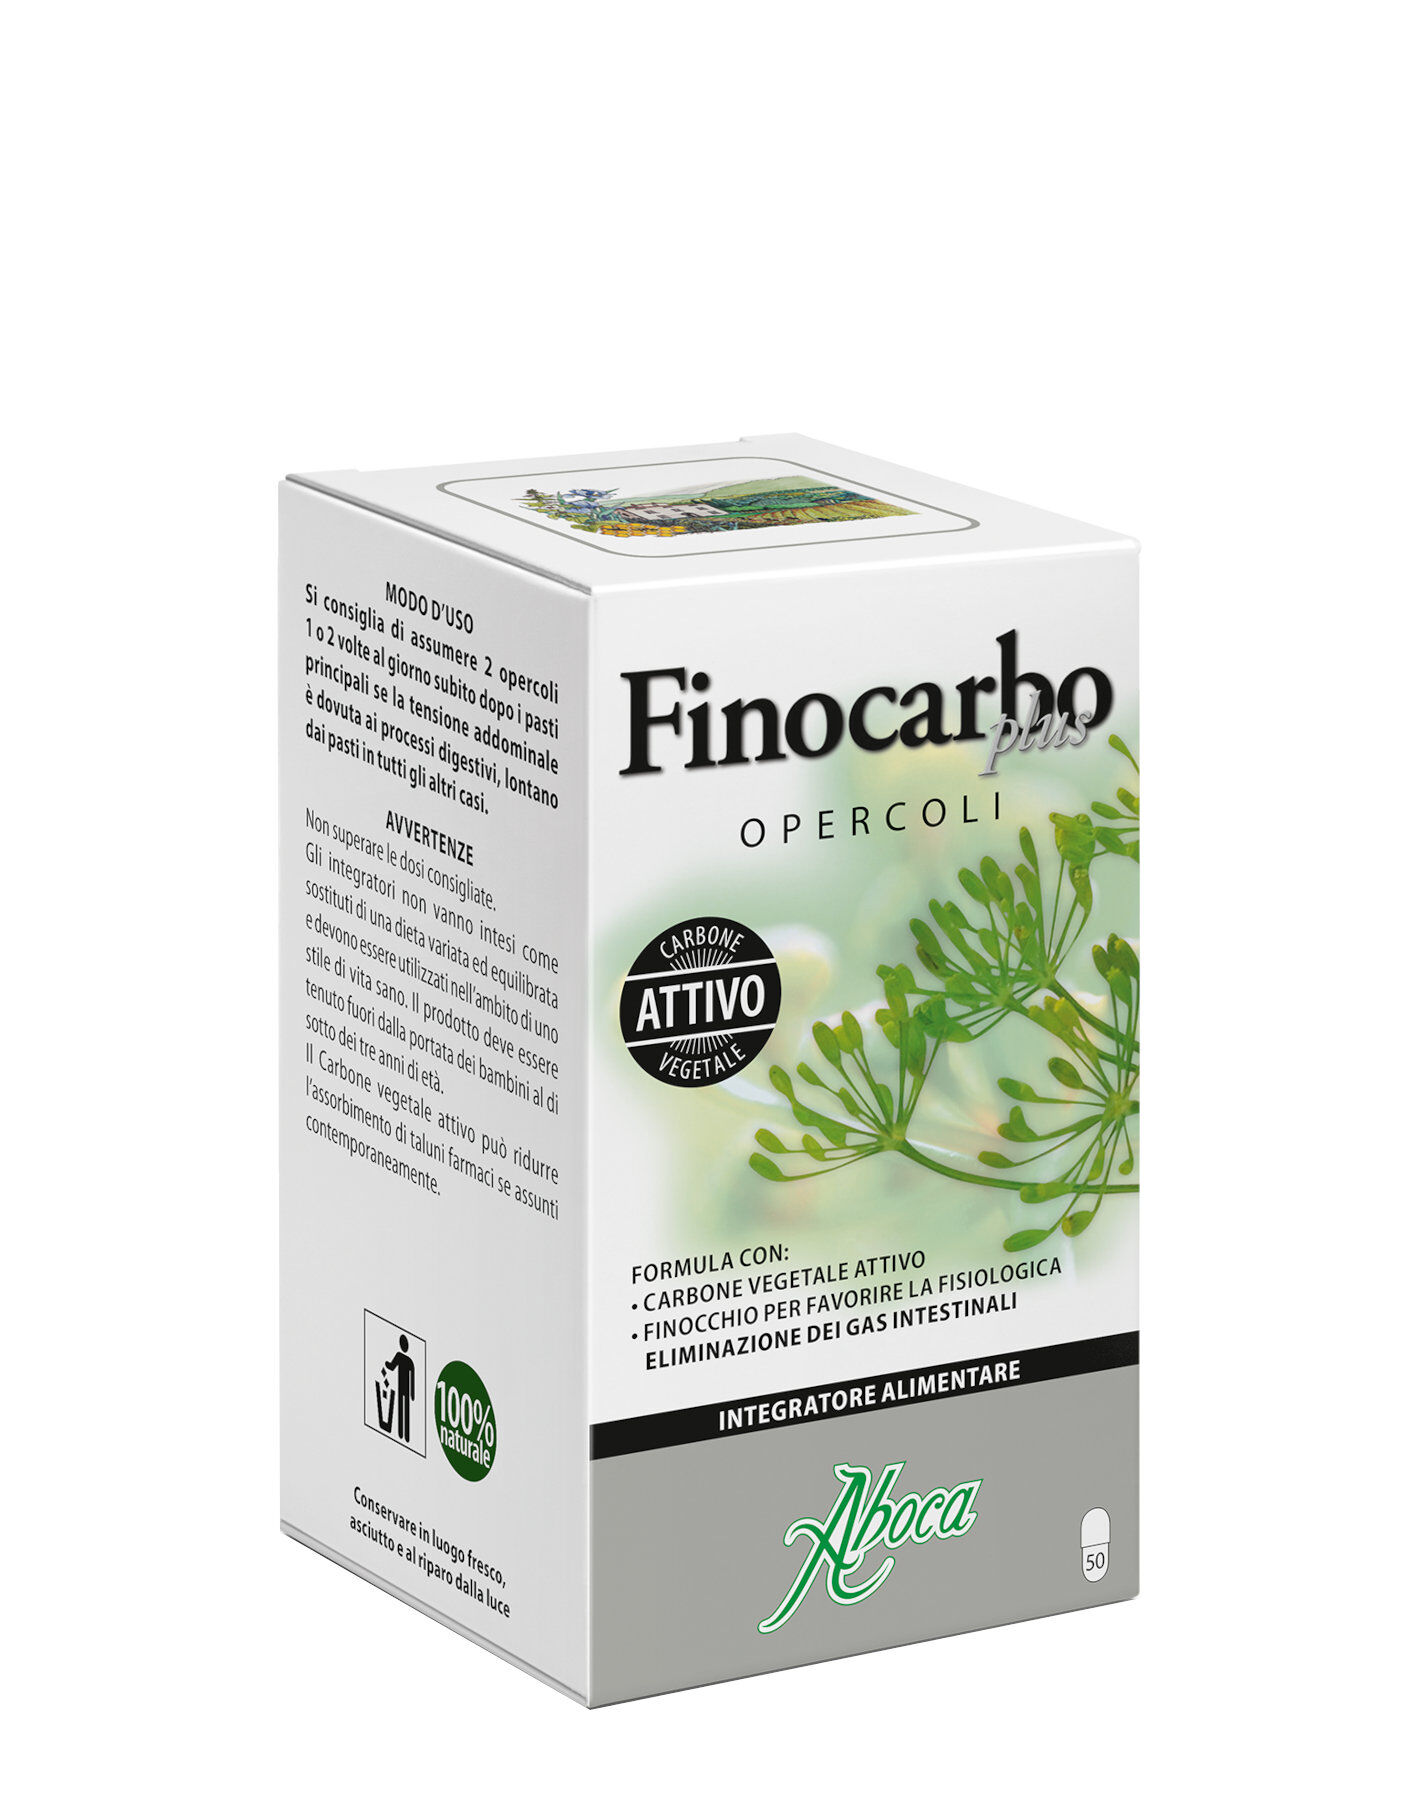 ABOCA Finocarbo Plus - Opercoli 50 Opercoli